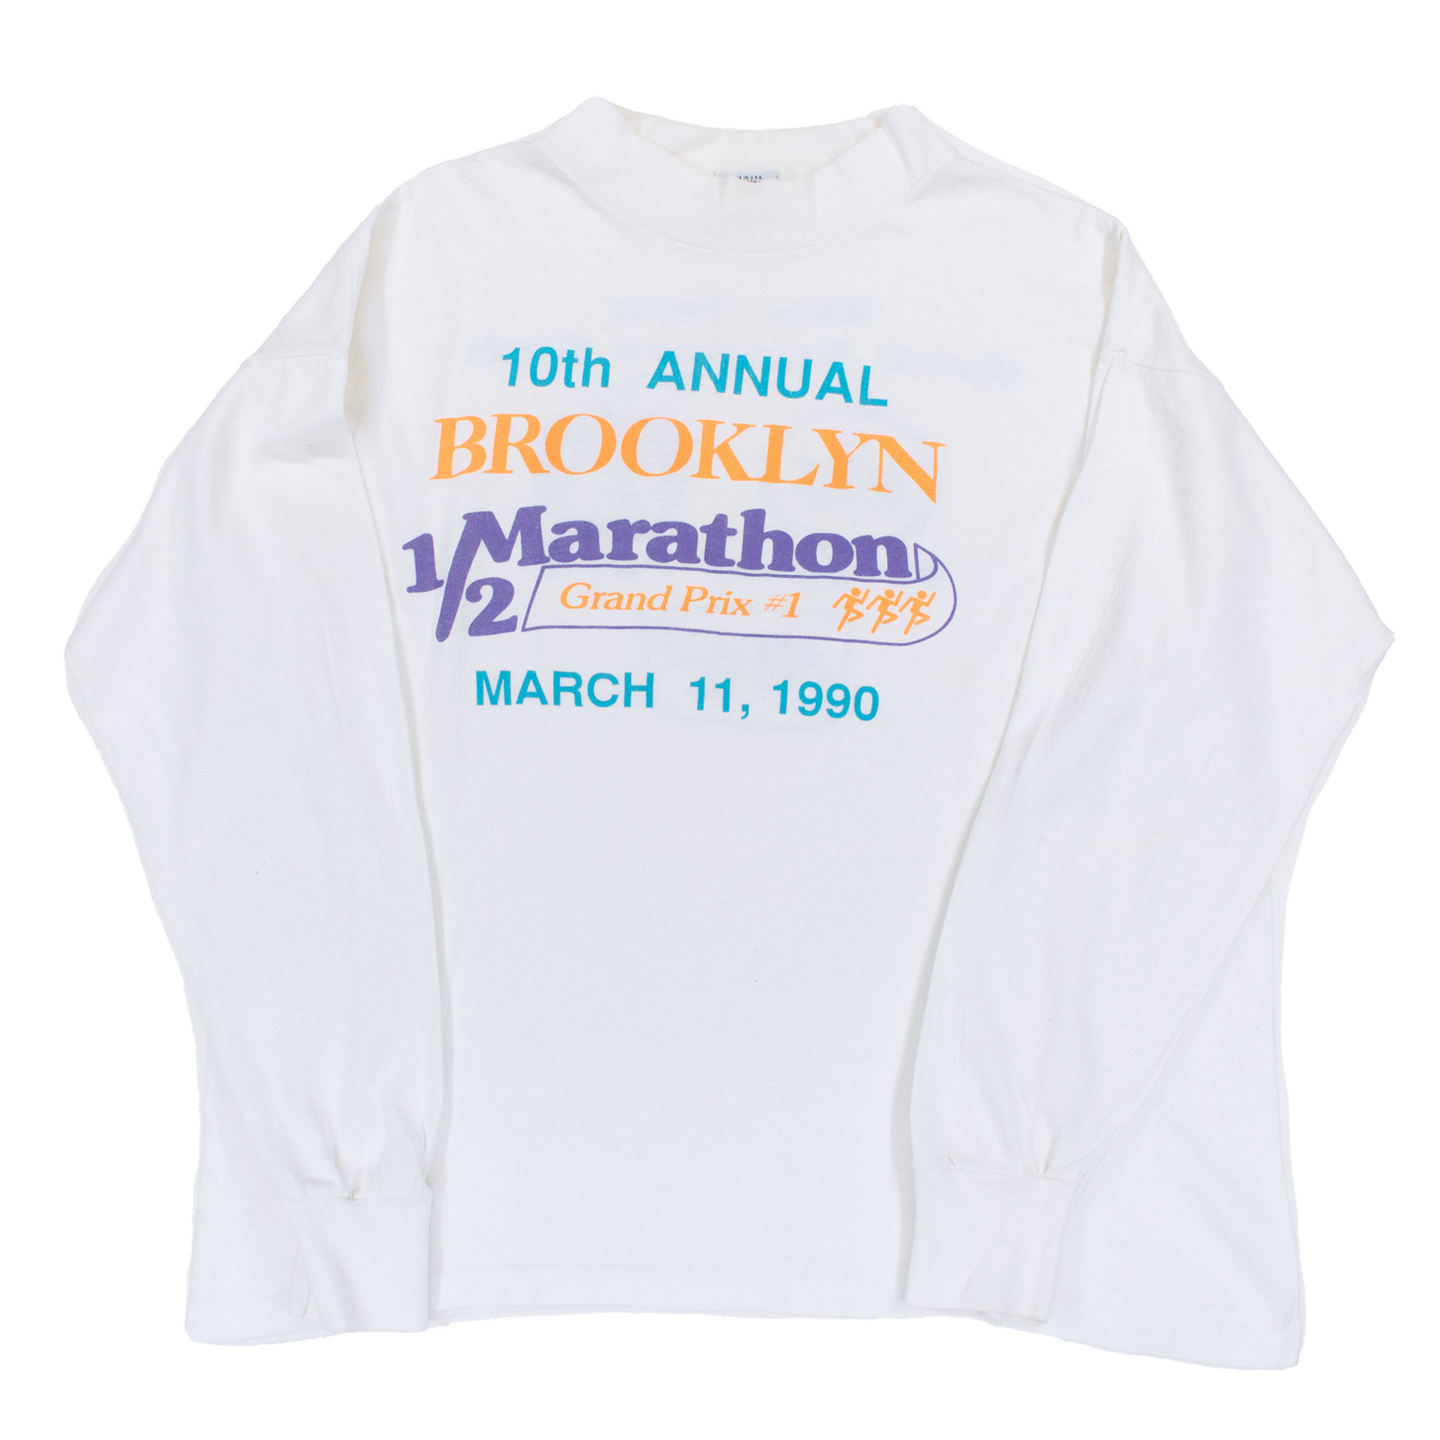 Vintage 1990 10th Annual Brooklyn Marathon Tee - S